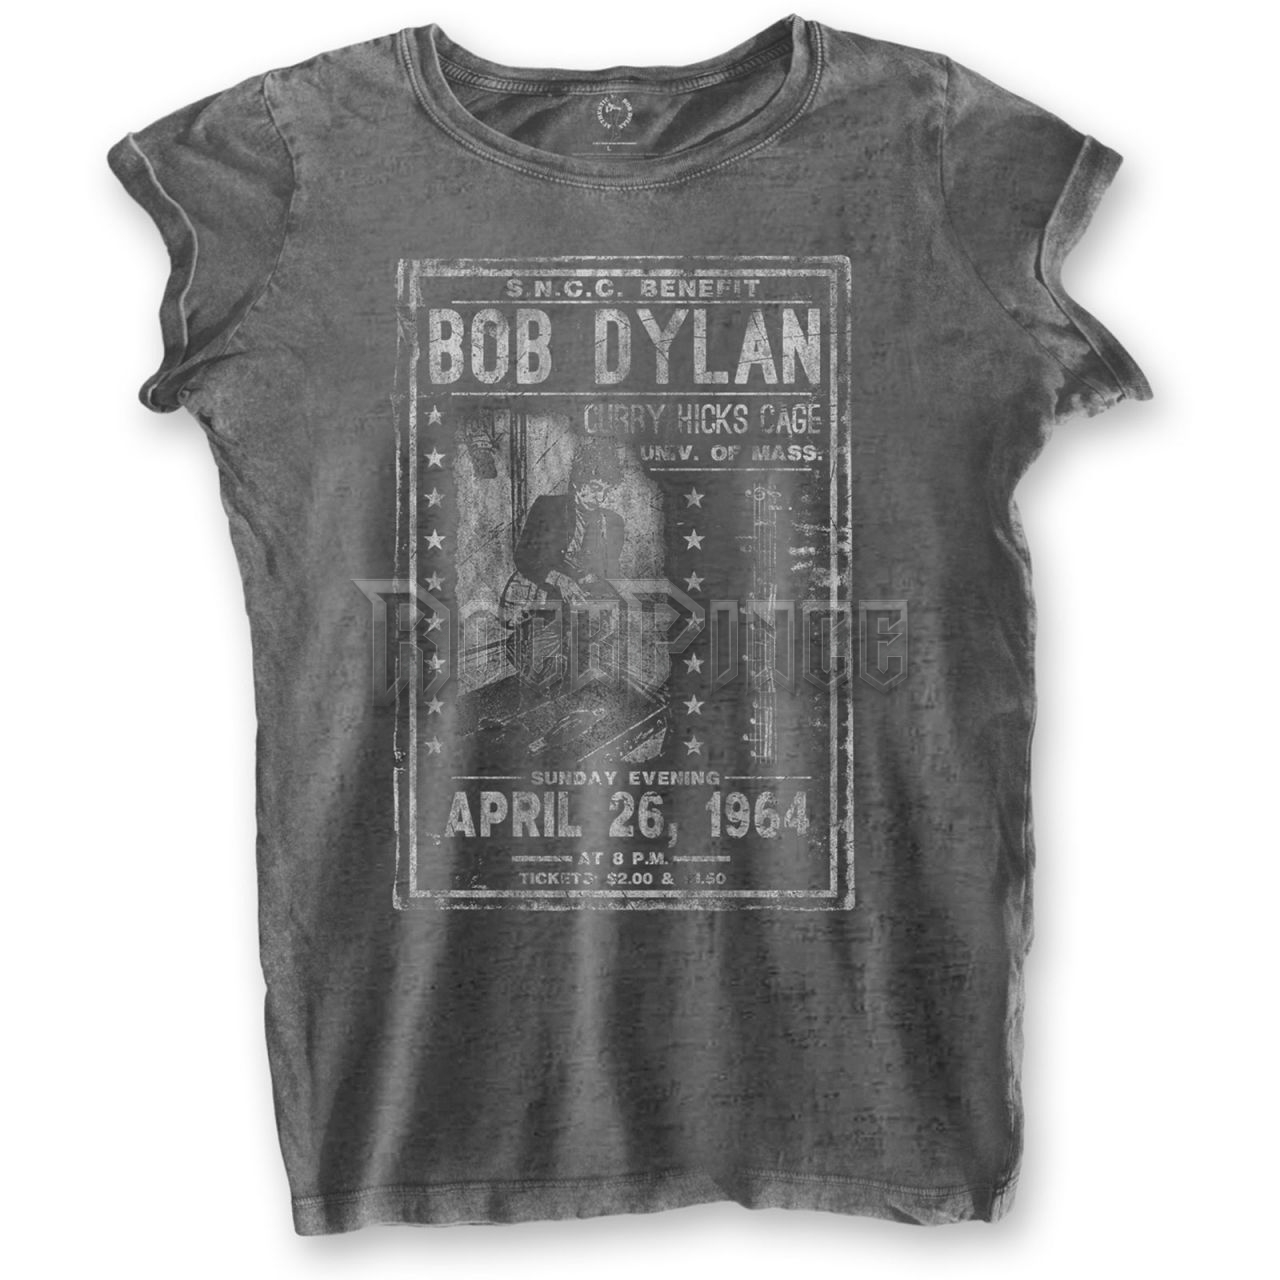 Bob Dylan - Curry Hicks Cage - női póló - DYLBOTS01LC